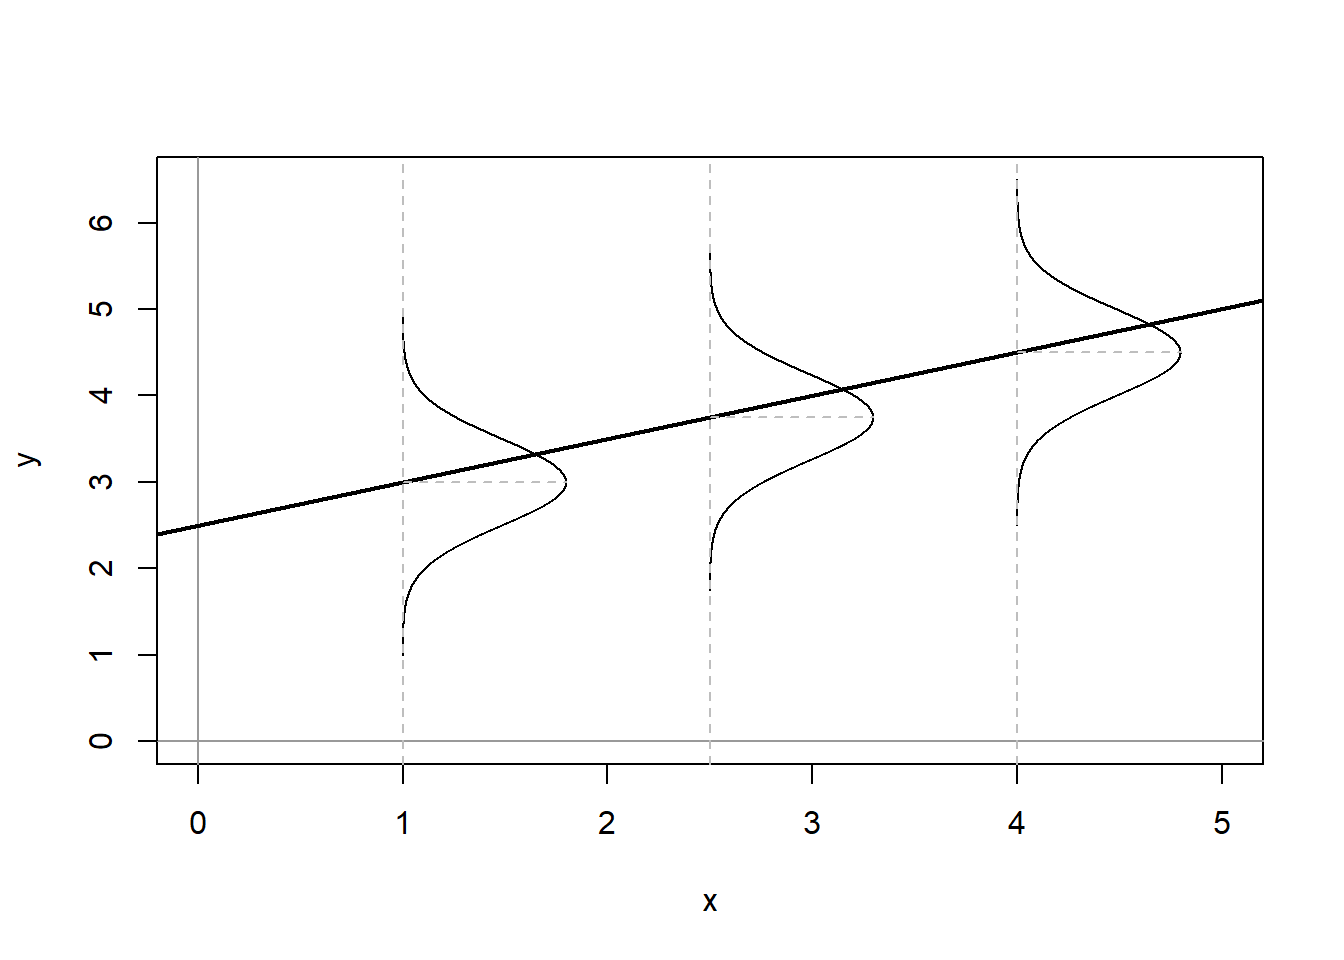 Stochastic Linear Model